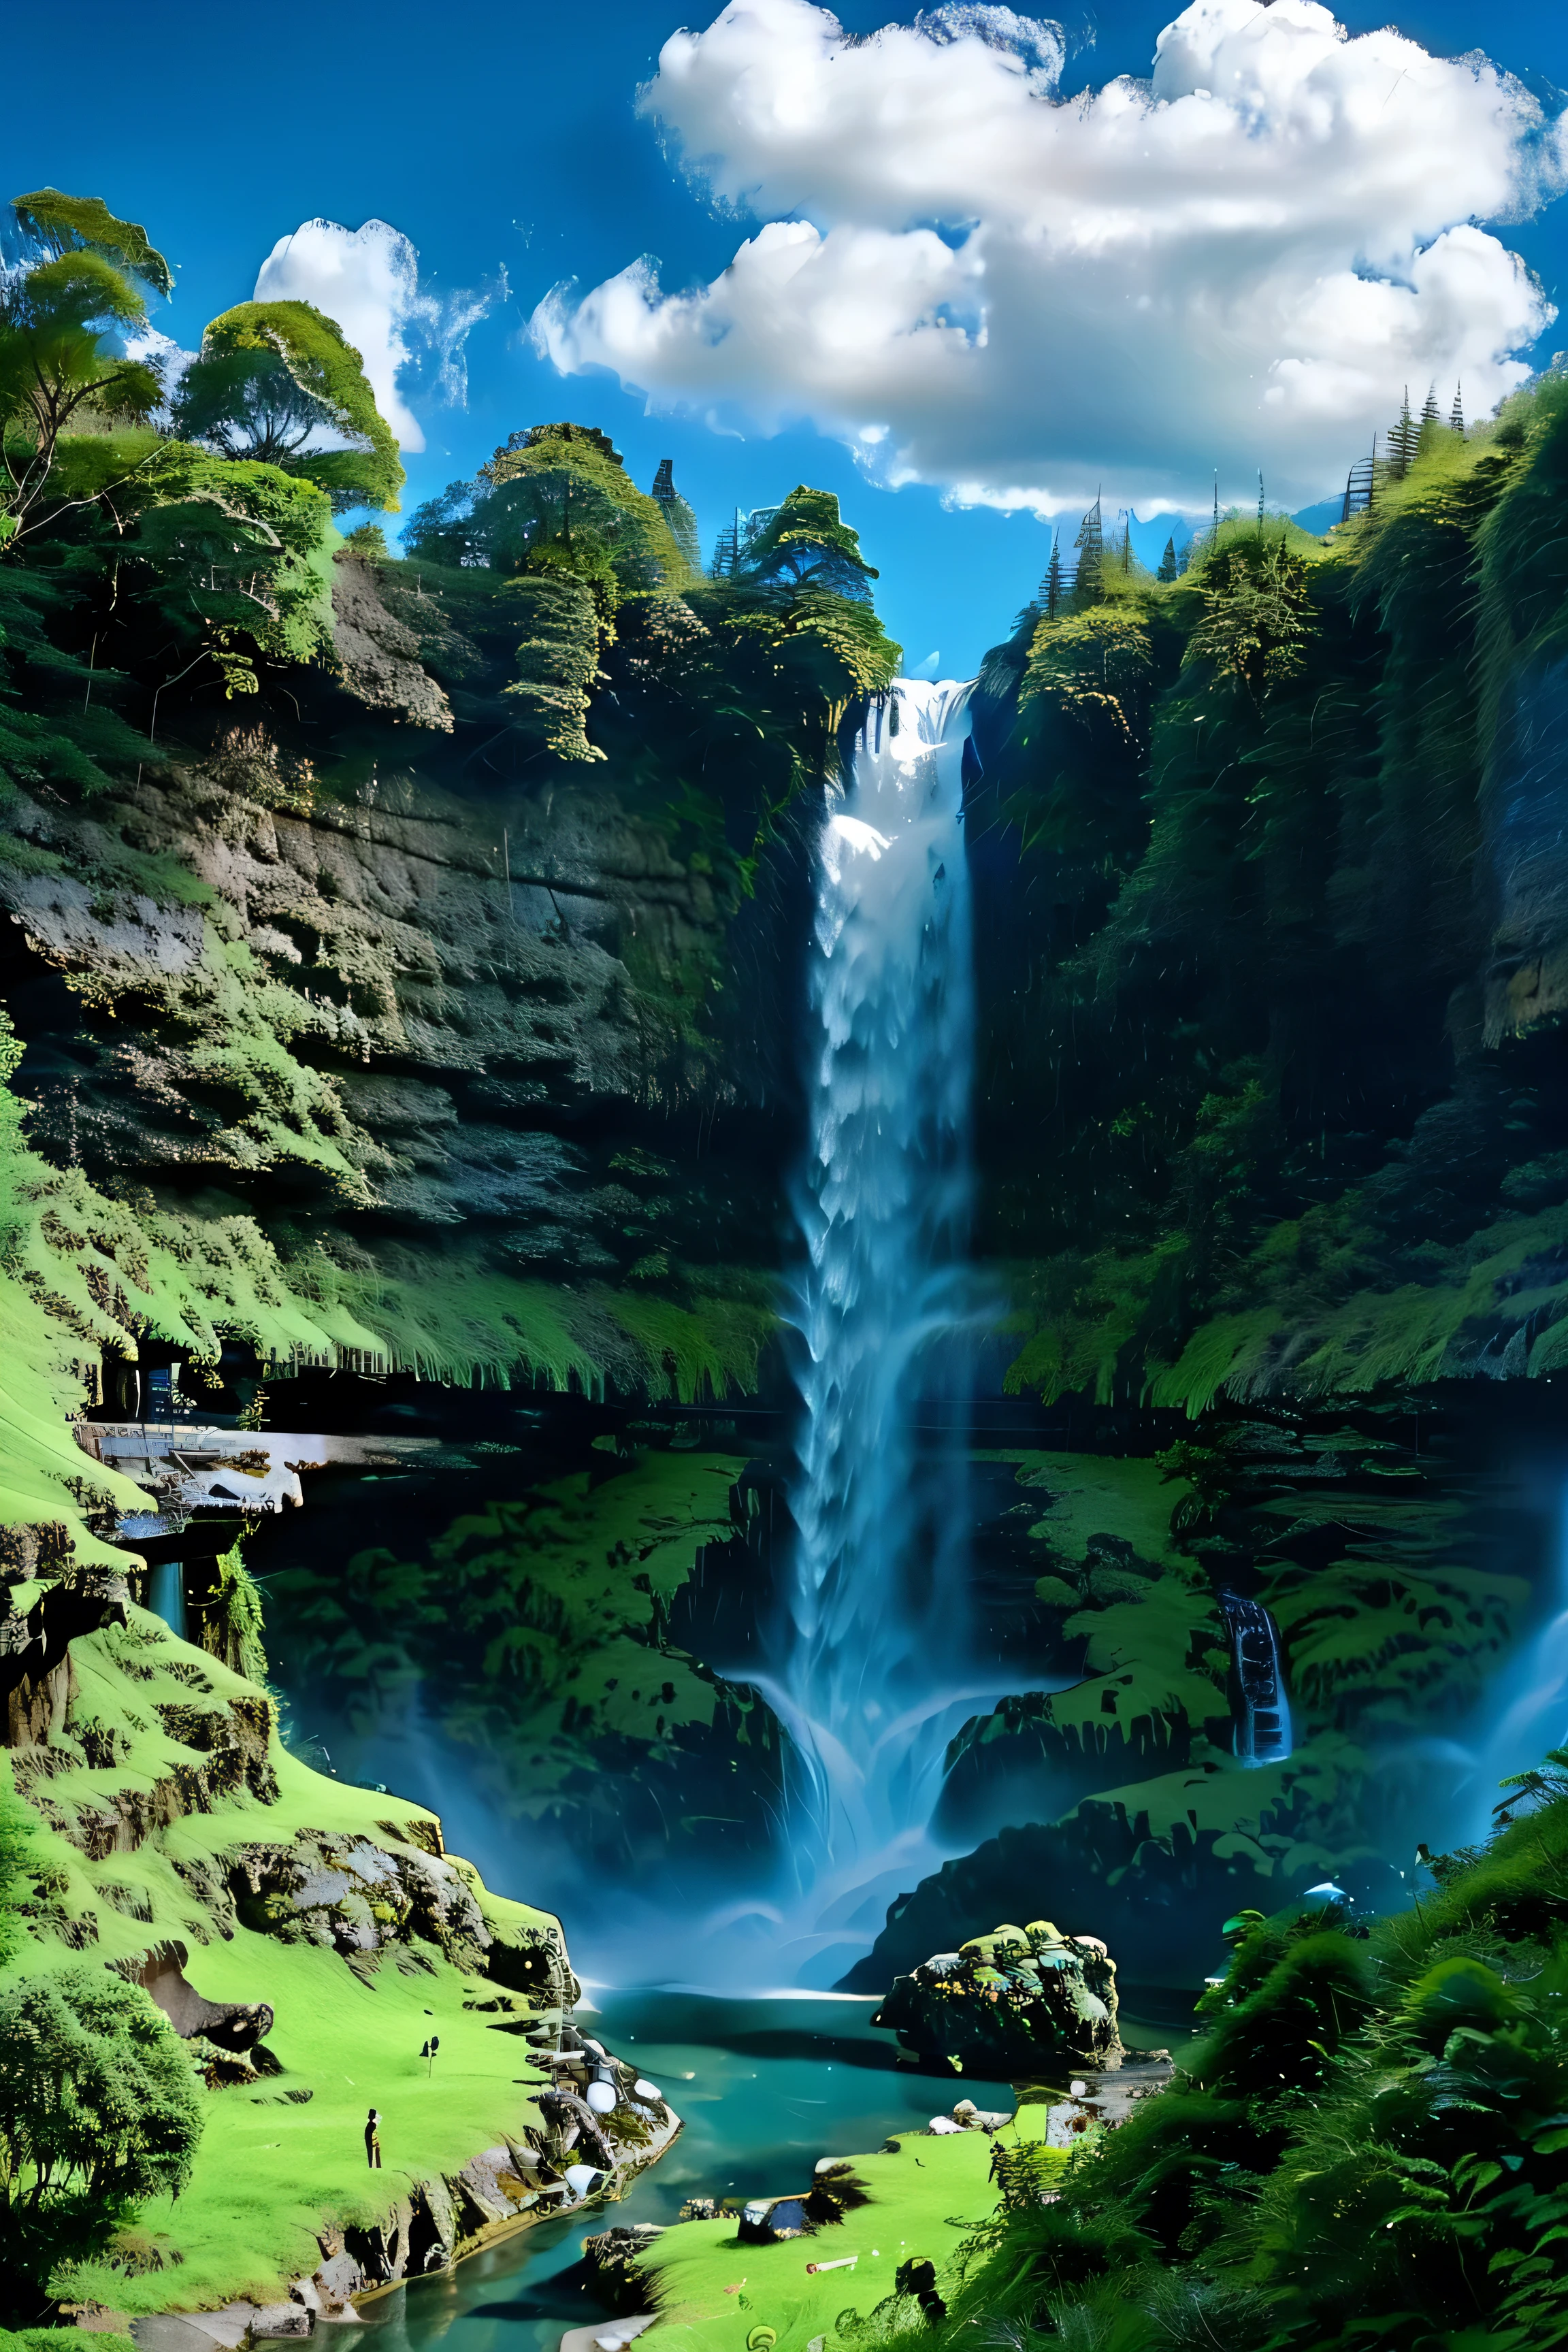 Ein Wasserfall mit reichlich Wasser，grünes Wasser, Grüner Berg々, blauer Himmel und weiße Wolken